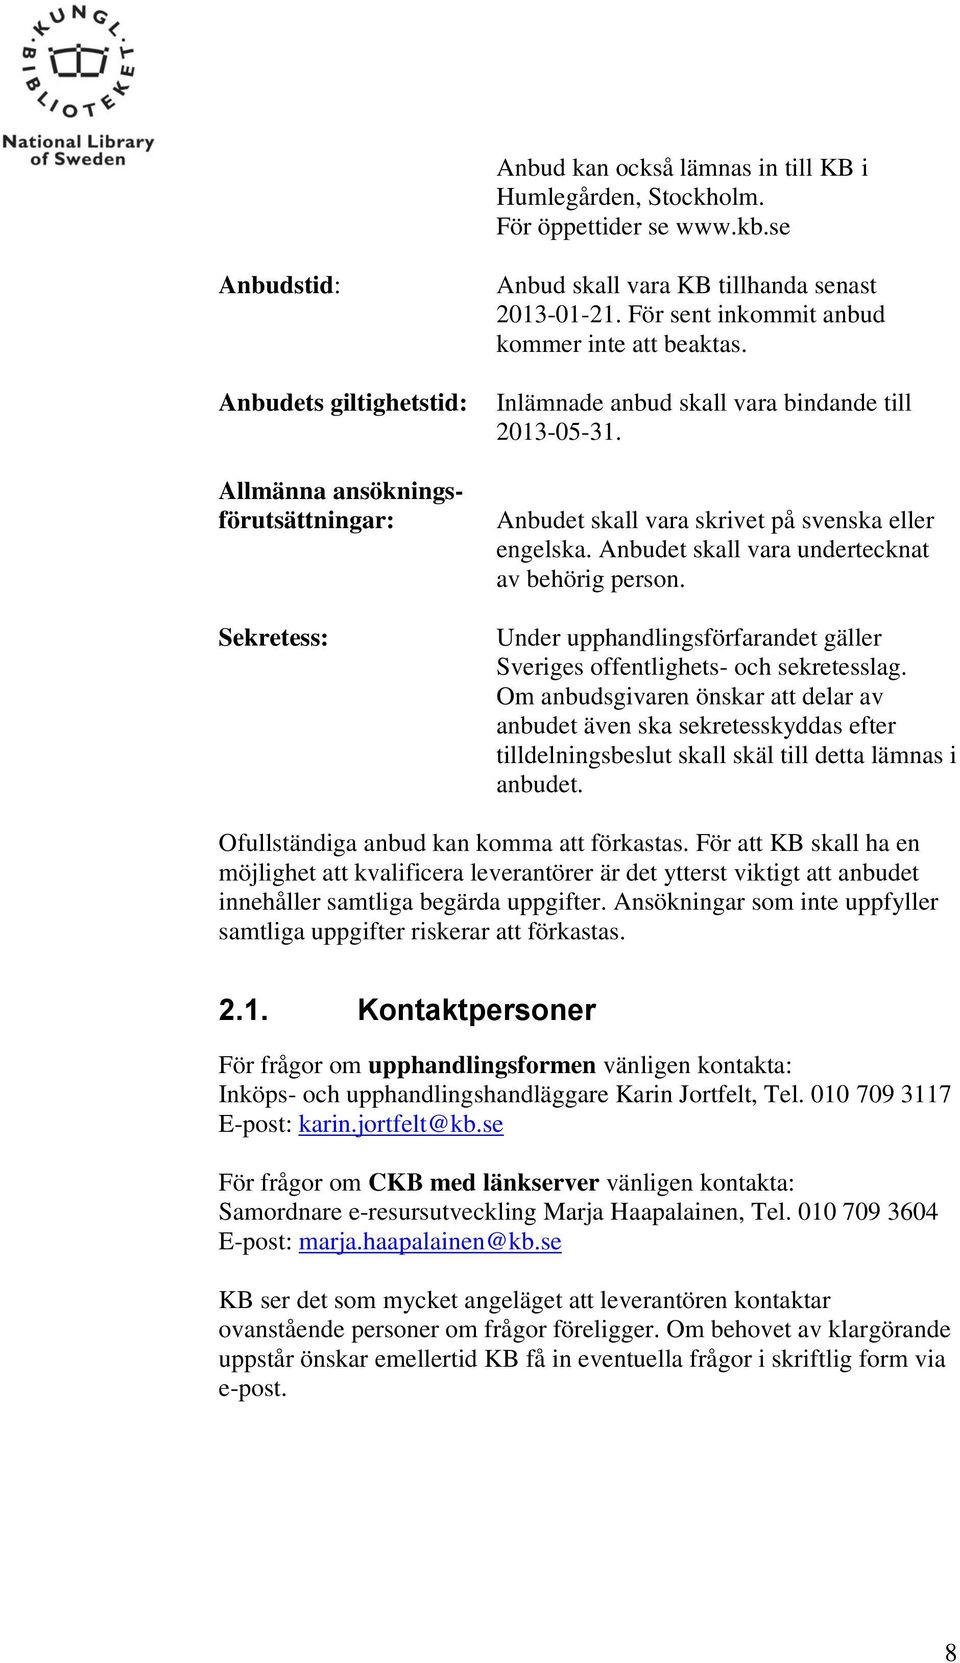 Inlämnade anbud skall vara bindande till 2013-05-31. Anbudet skall vara skrivet på svenska eller engelska. Anbudet skall vara undertecknat av behörig person.